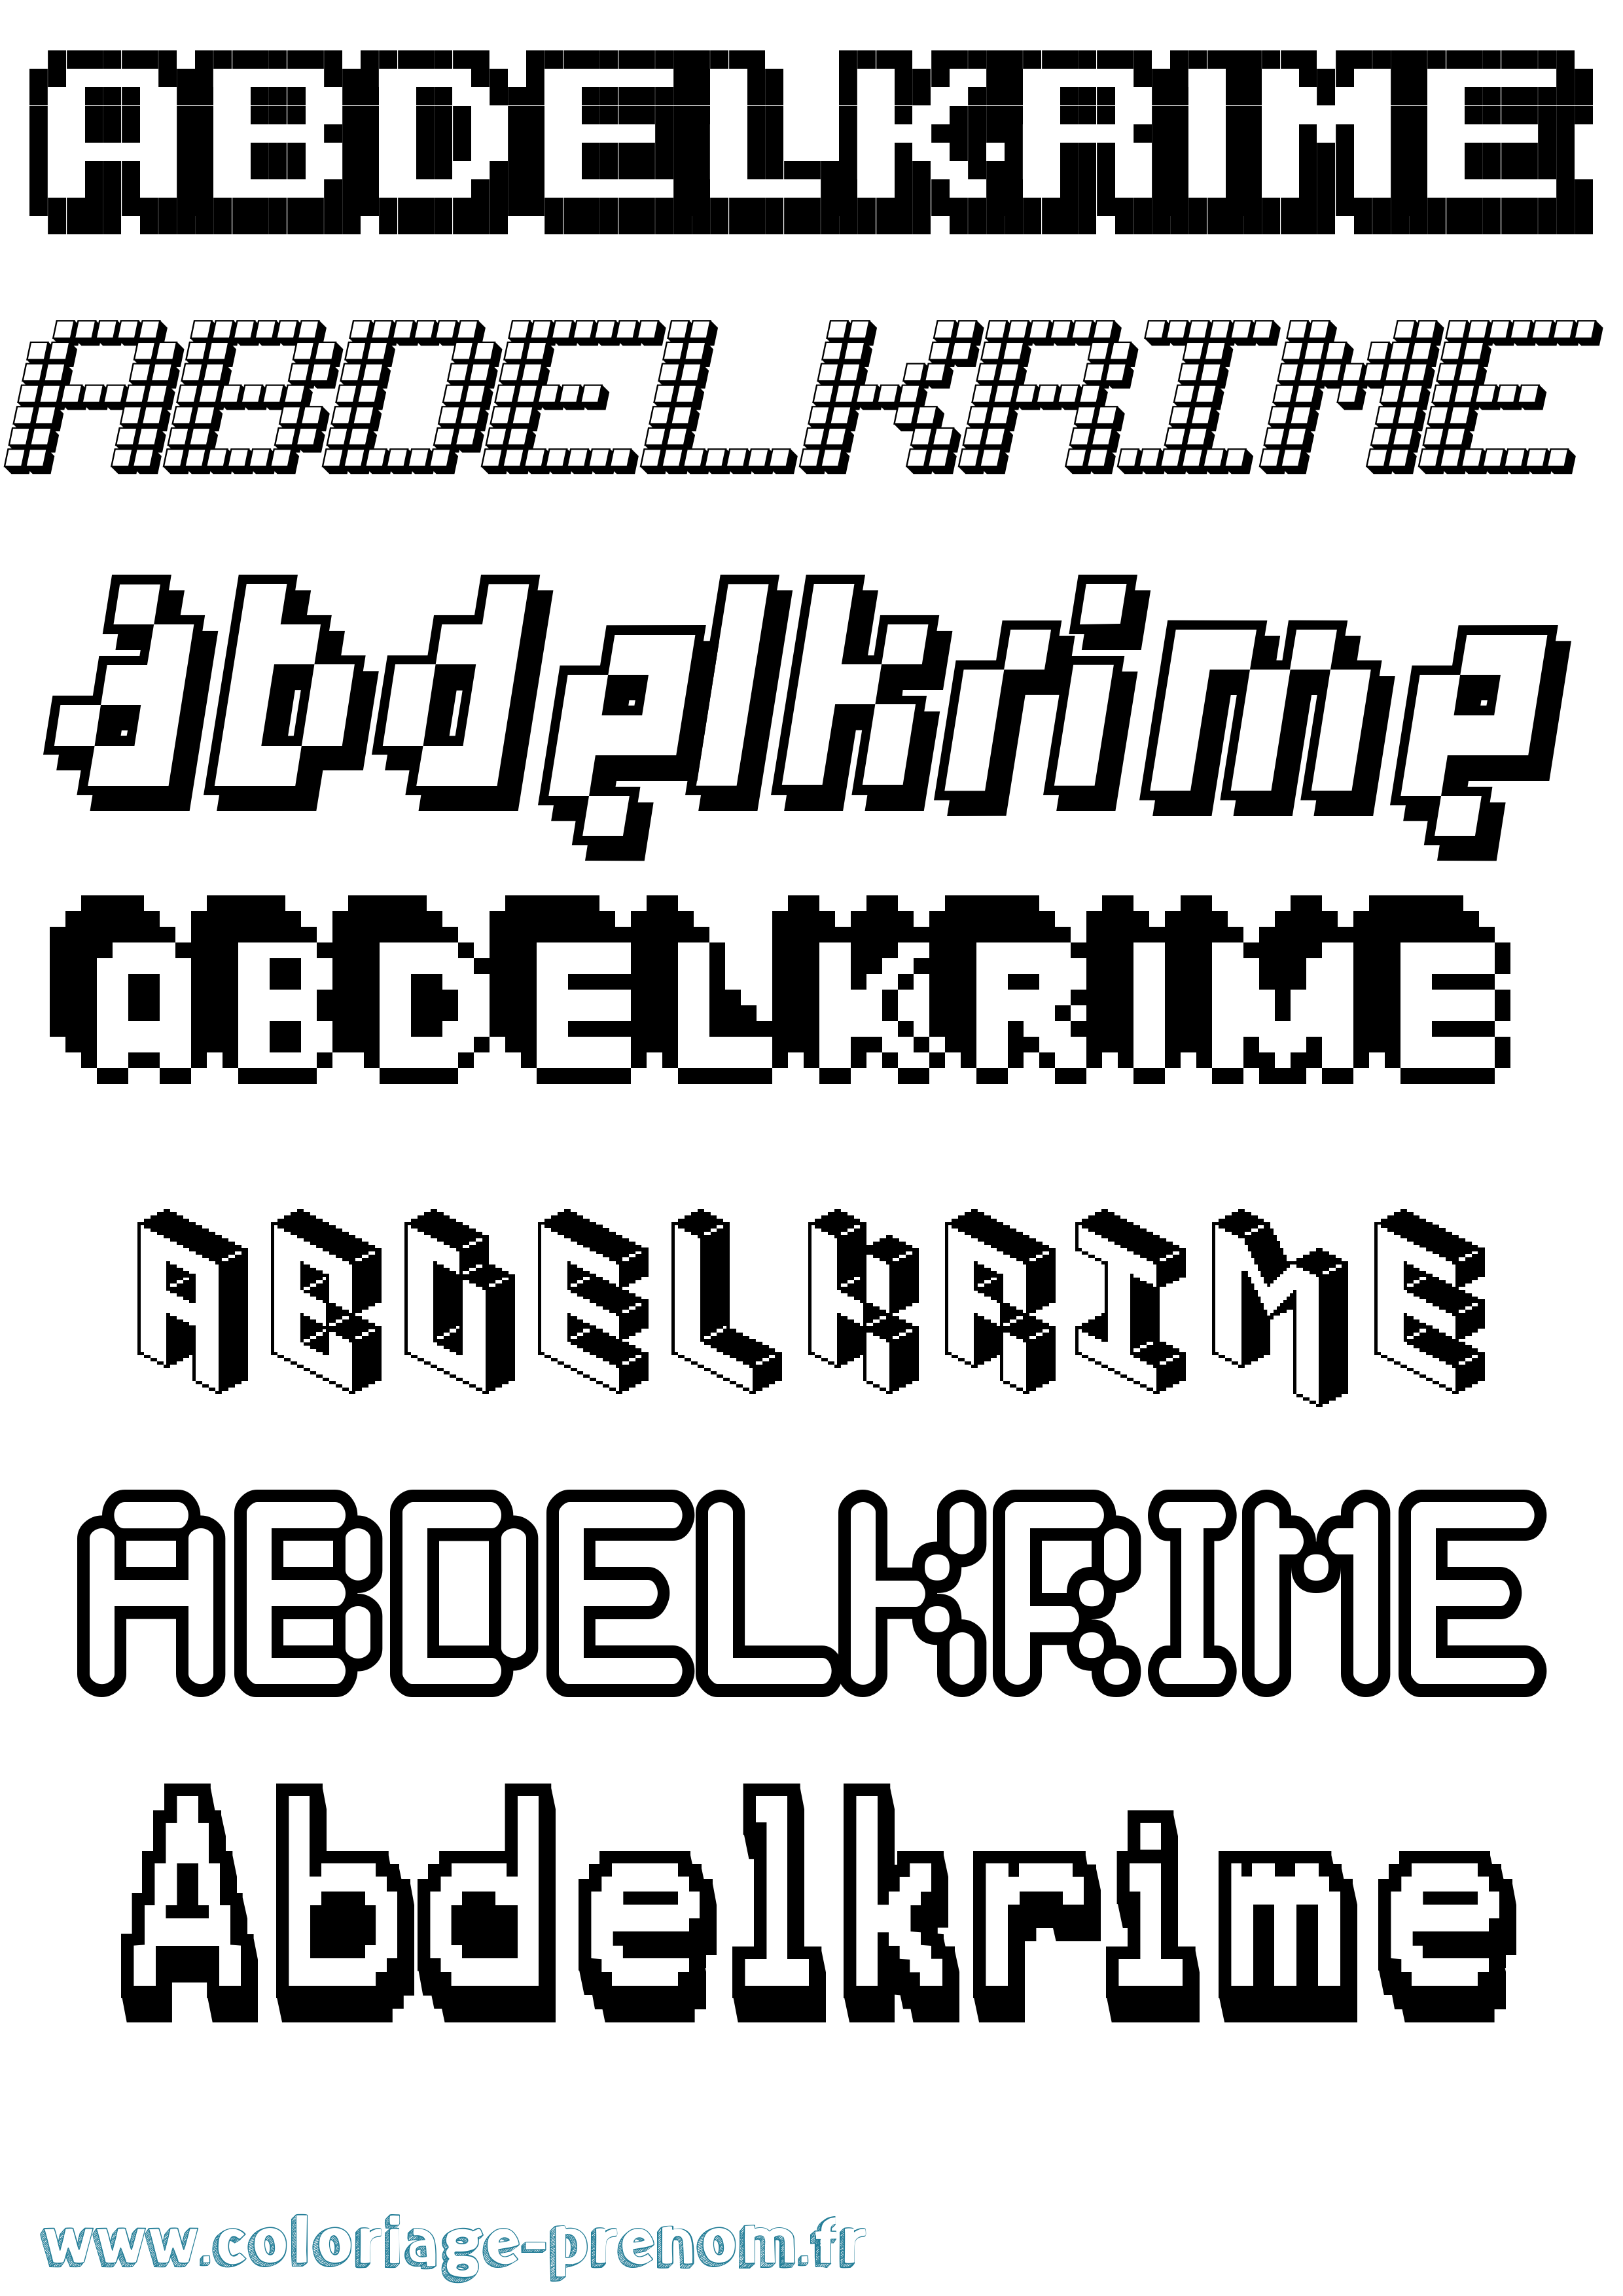 Coloriage prénom Abdelkrime Pixel